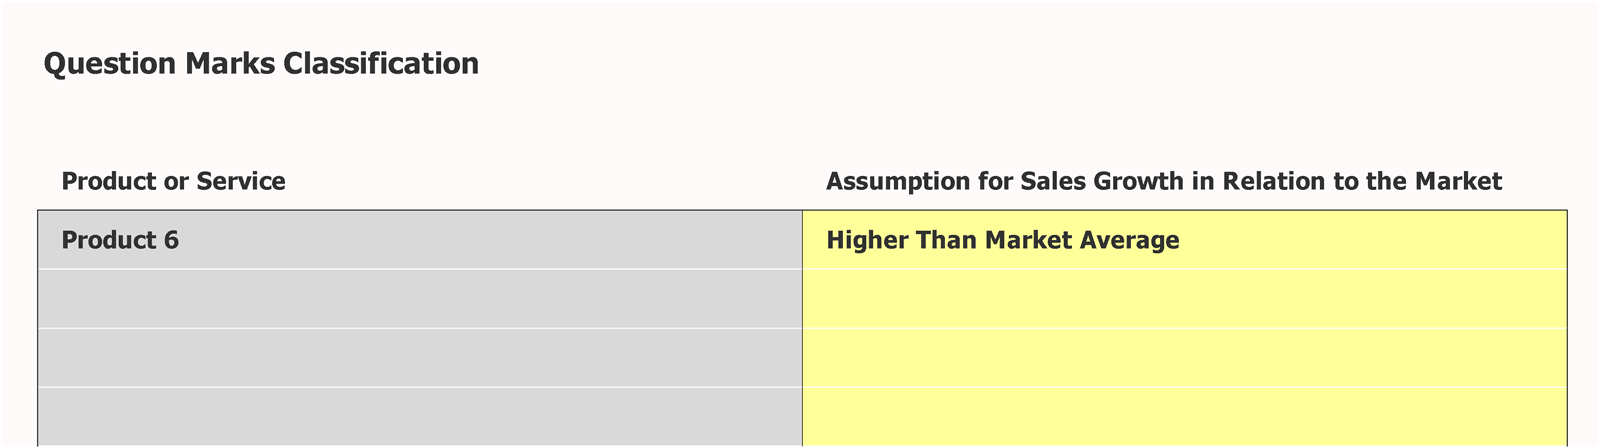 Boston Consulting Matrix Question Marks Classification